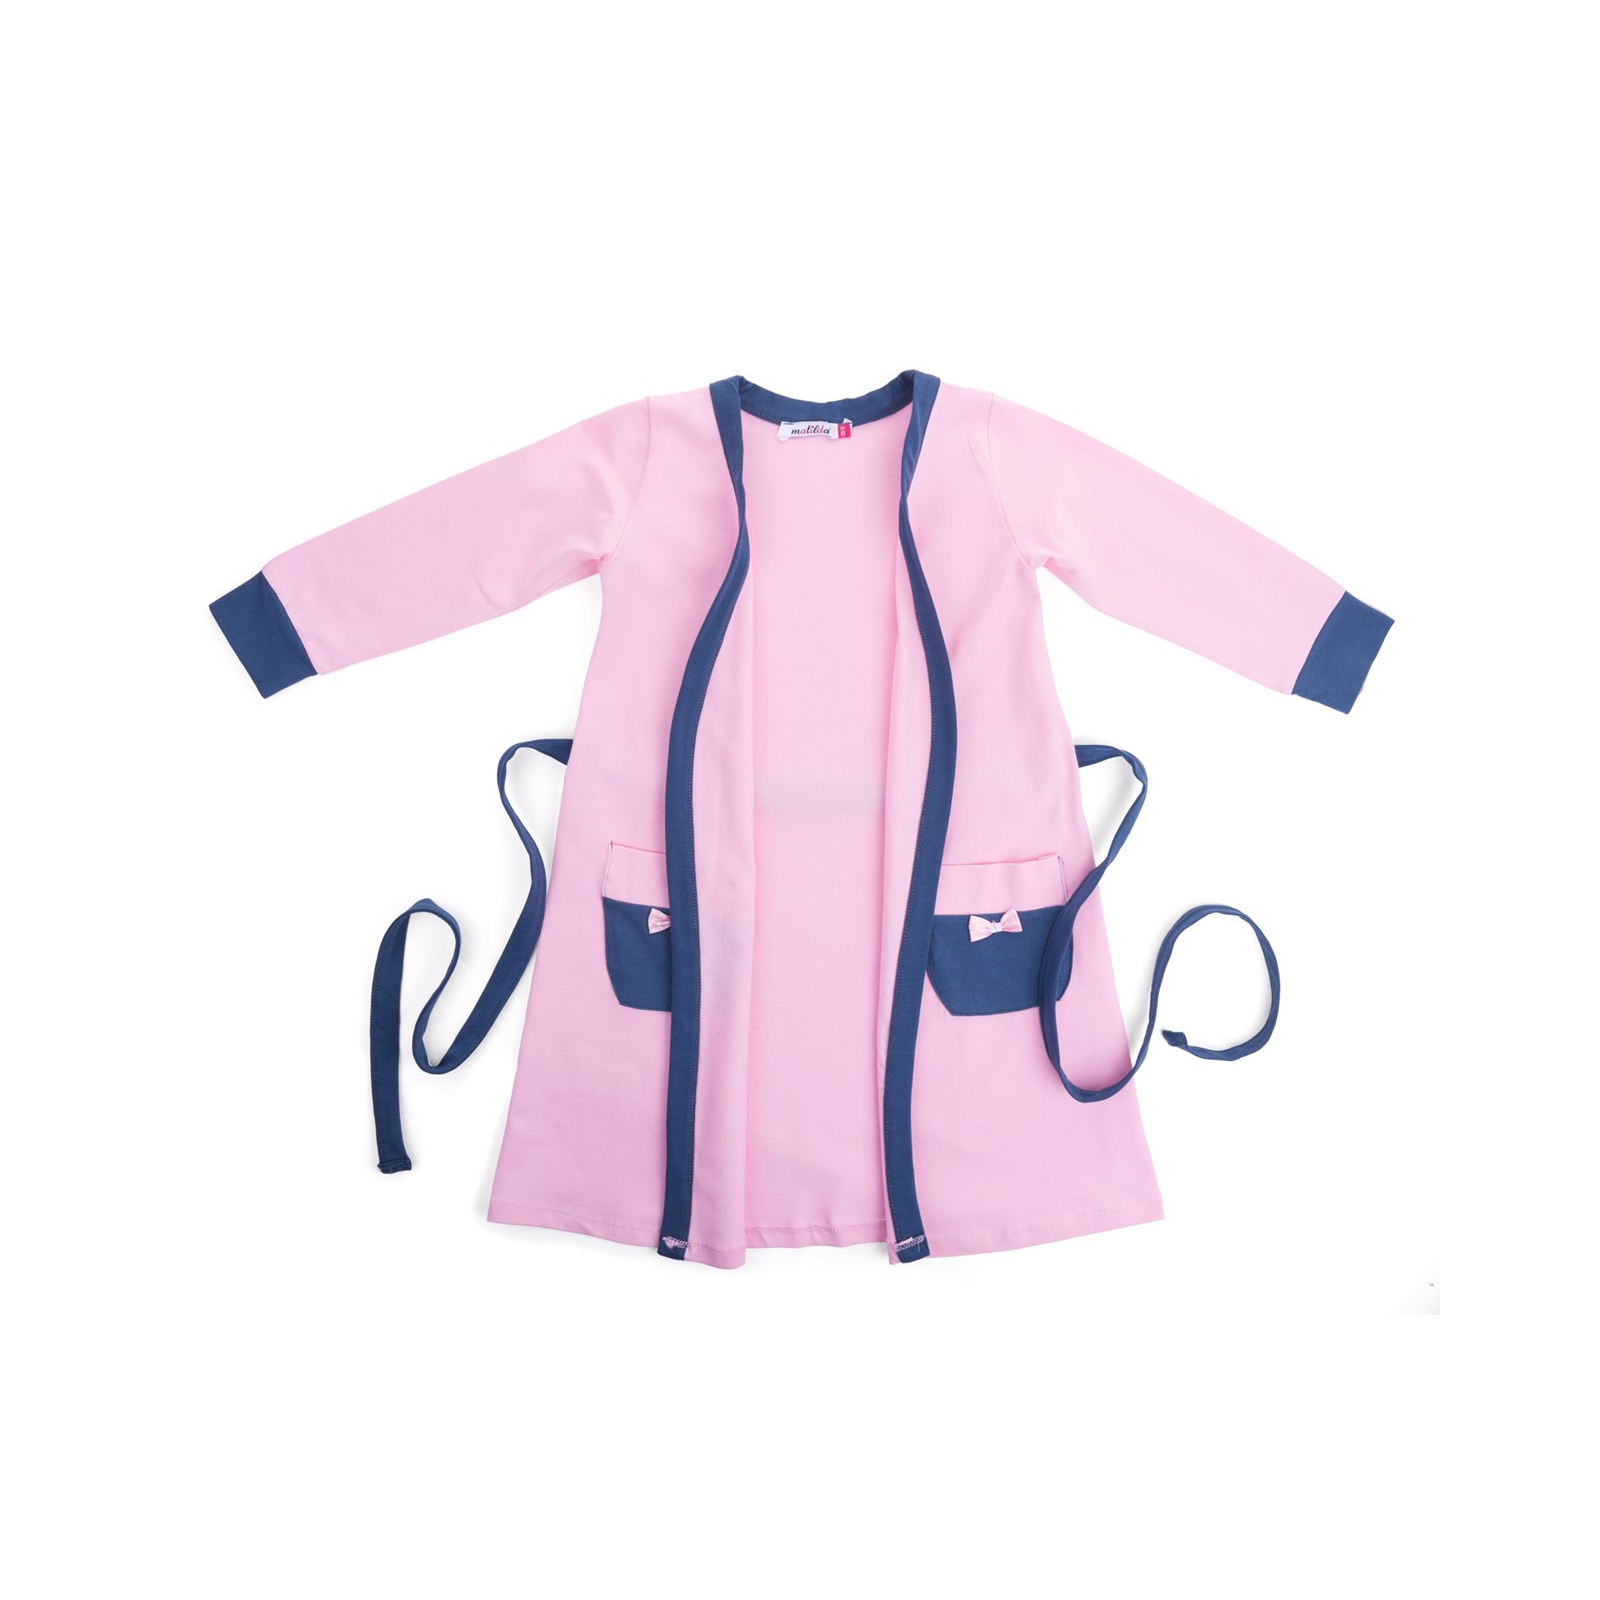 Пижама Matilda и халат с мишками "Love" (7445-152G-pink) изображение 4